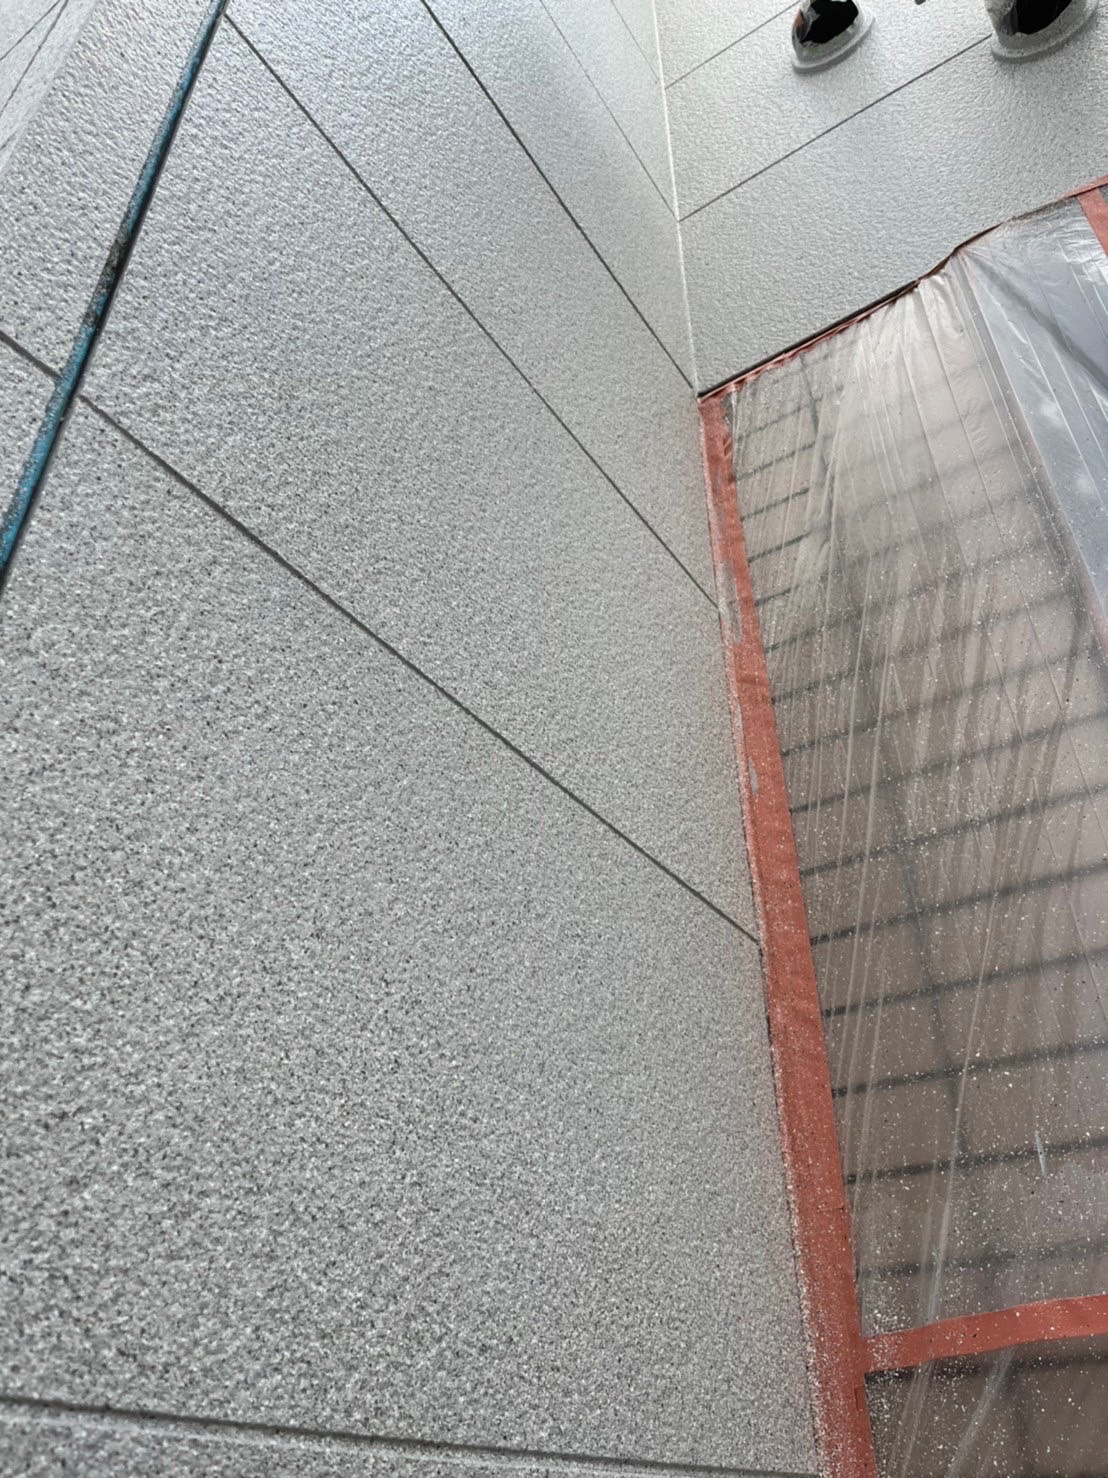 福岡県福岡市中央区 M様邸 外壁グラナートSP面 トップコート吹き付け完了 写真8